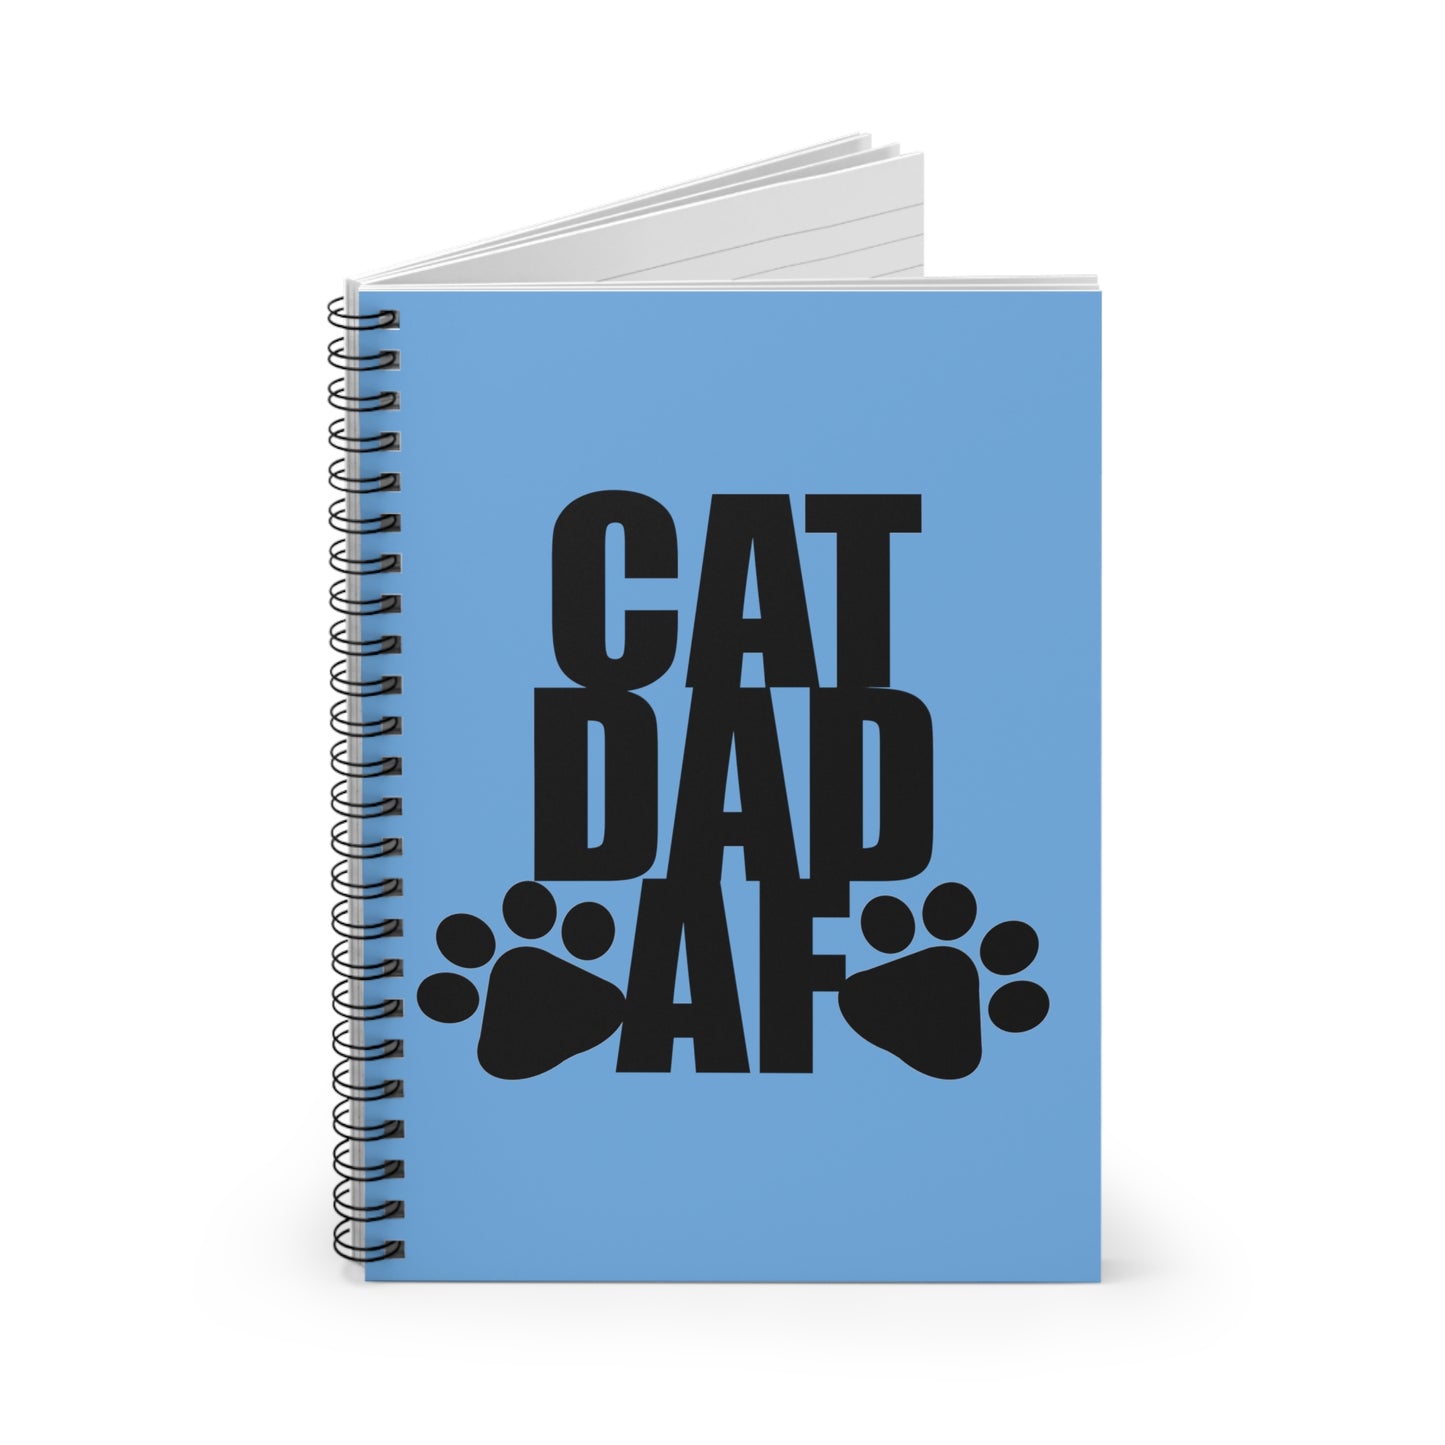 Cat Dad AF Spiral Notebook - Ruled Line